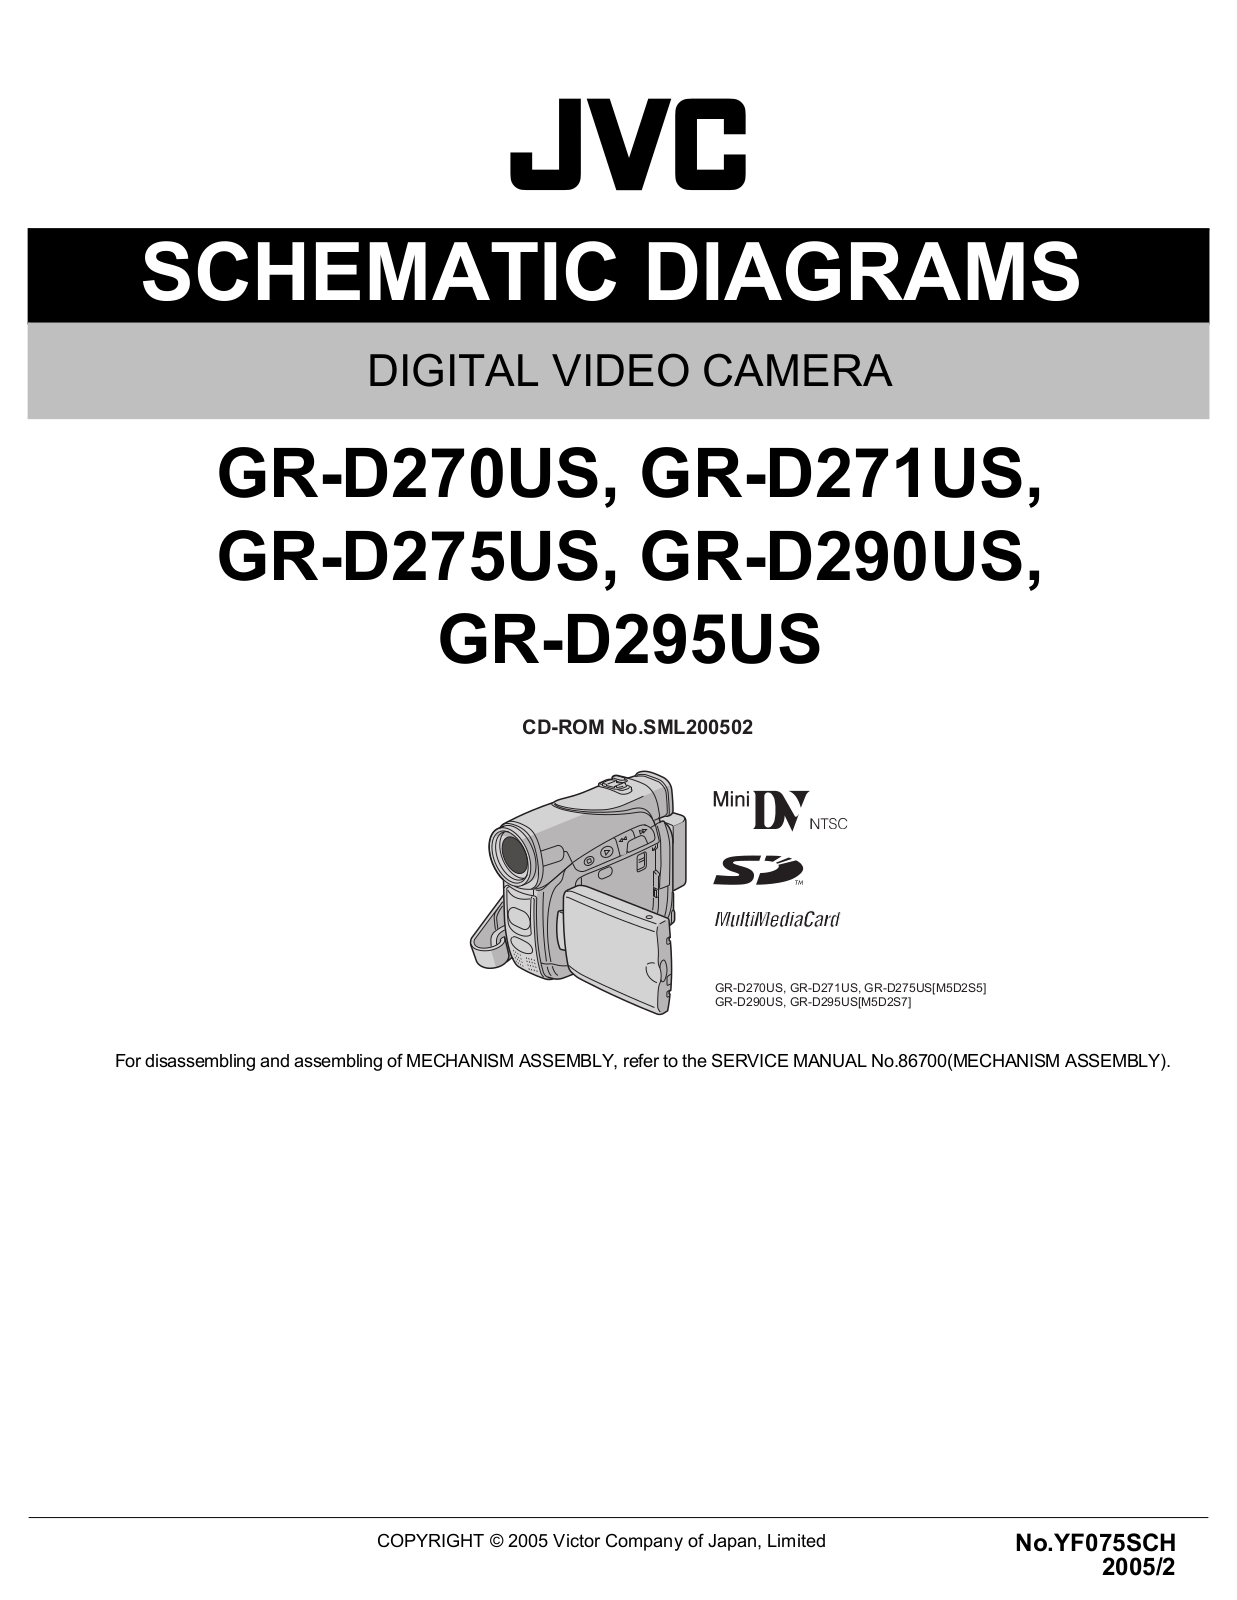 JVC GR-D270US, GR-D271US, GR-D275US, GR-D290US, GR-D295US Schematics